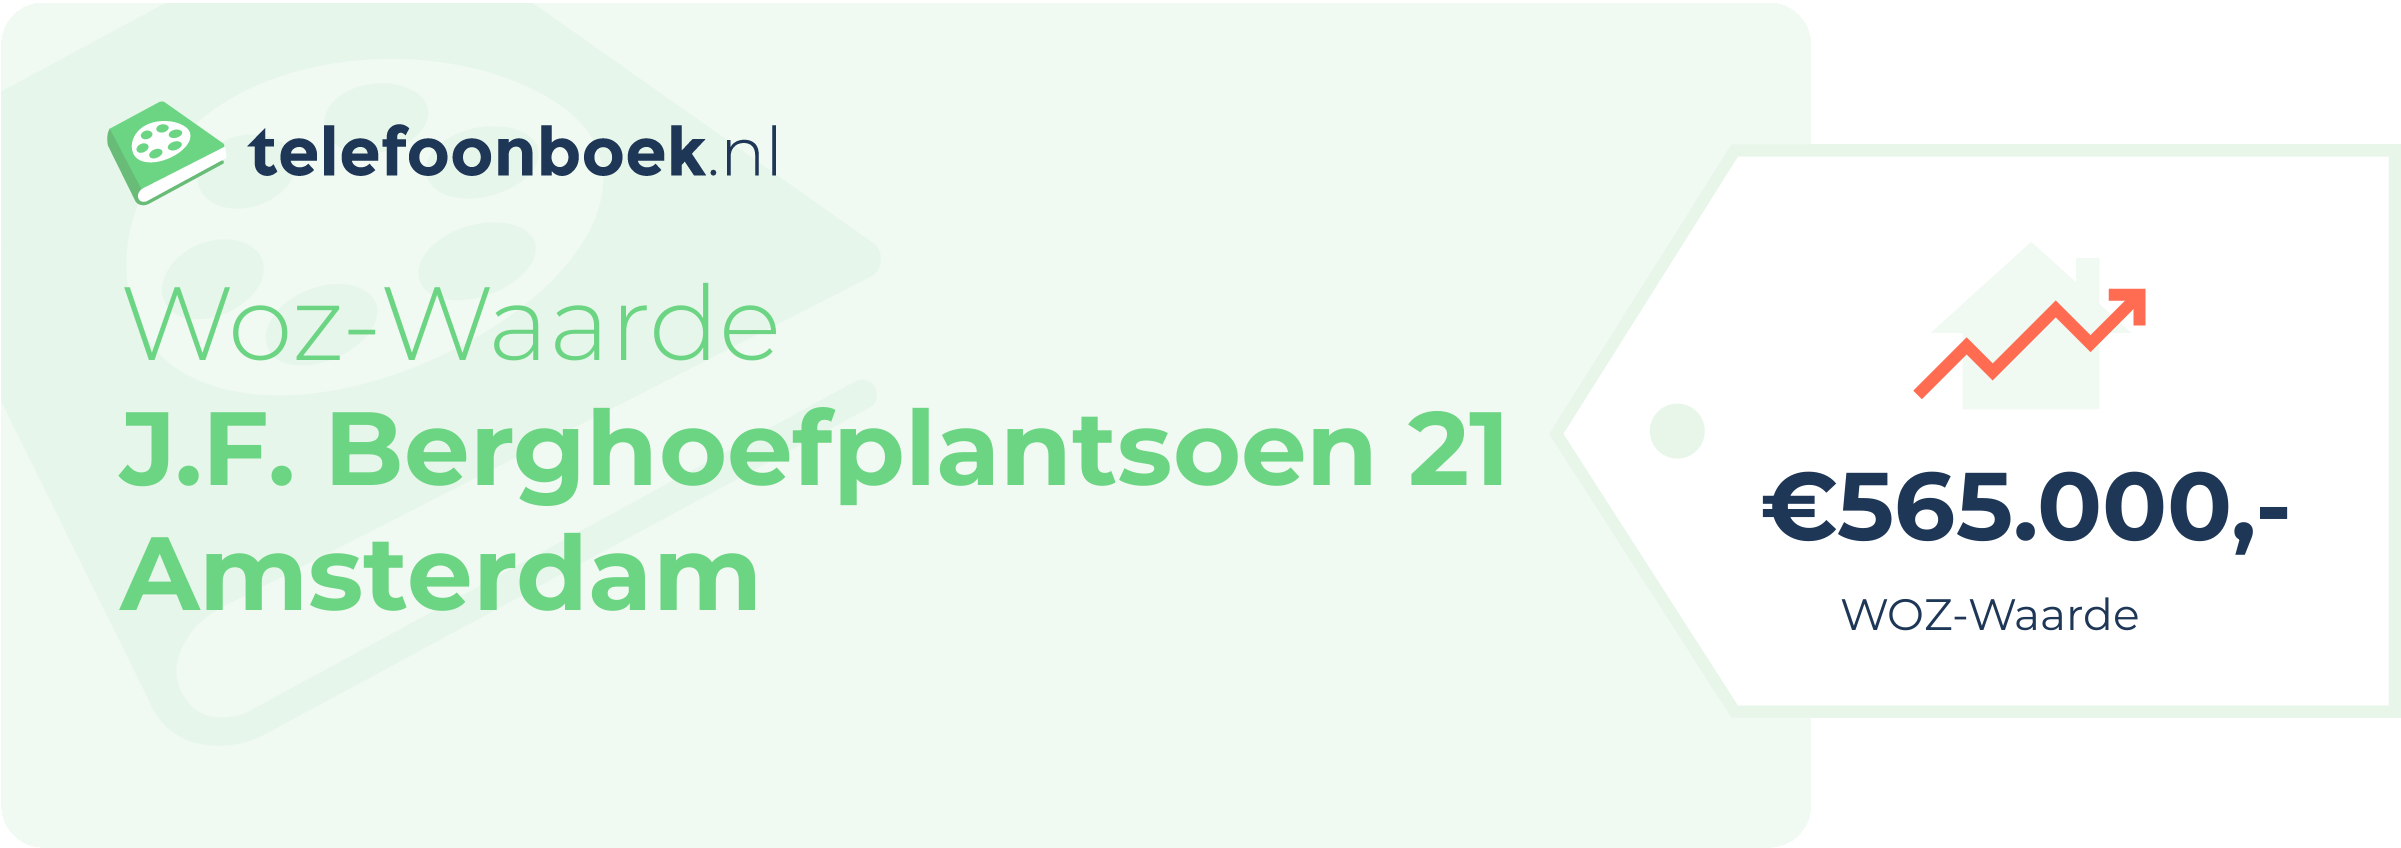 WOZ-waarde J.F. Berghoefplantsoen 21 Amsterdam